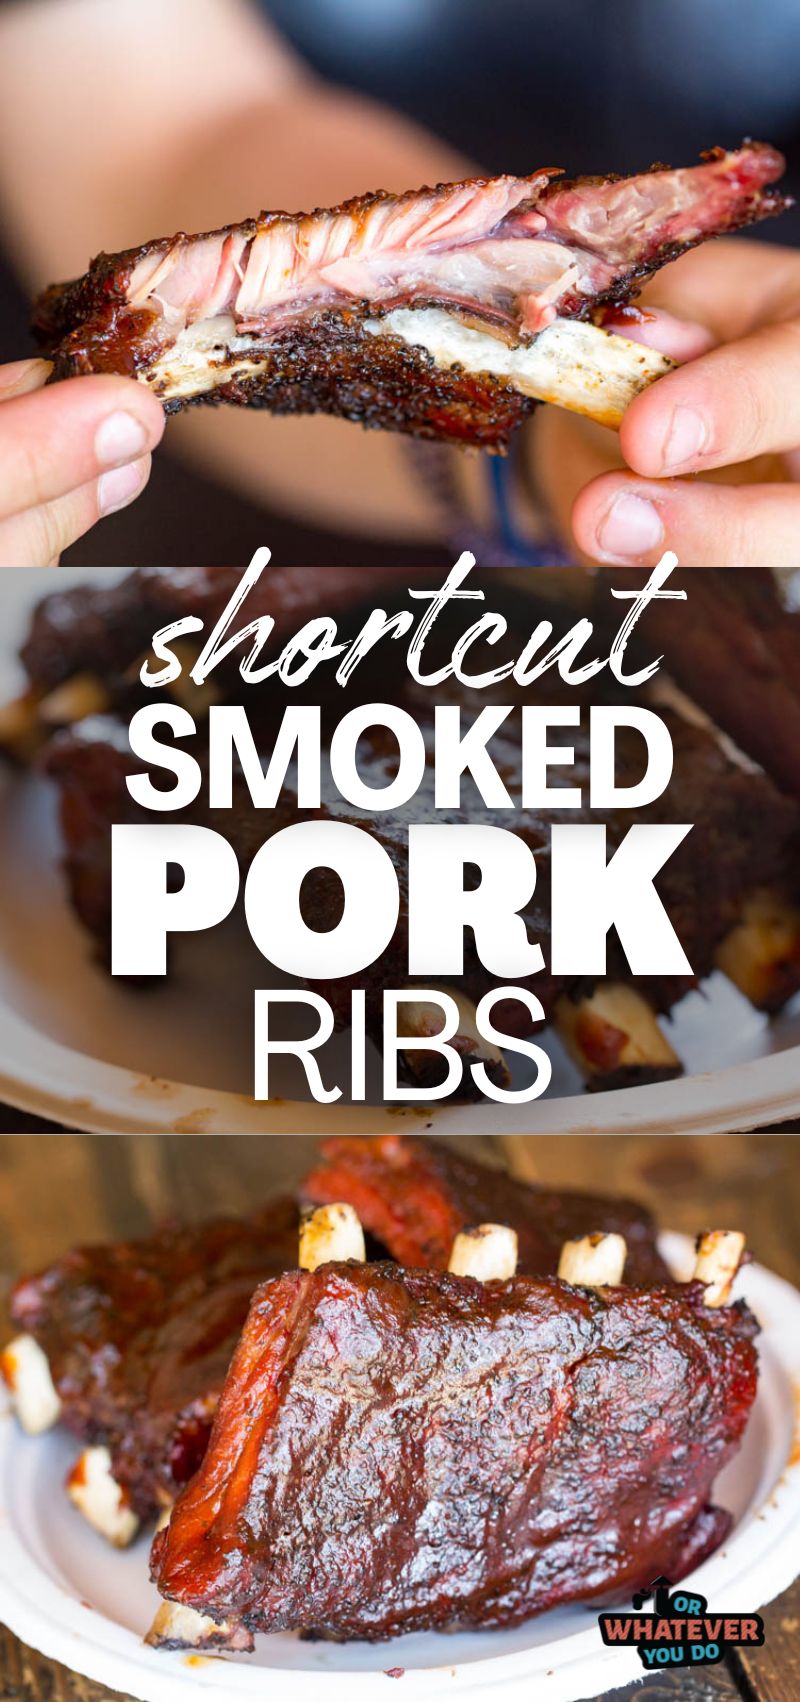 Shortcut Smoked Pork Ribs